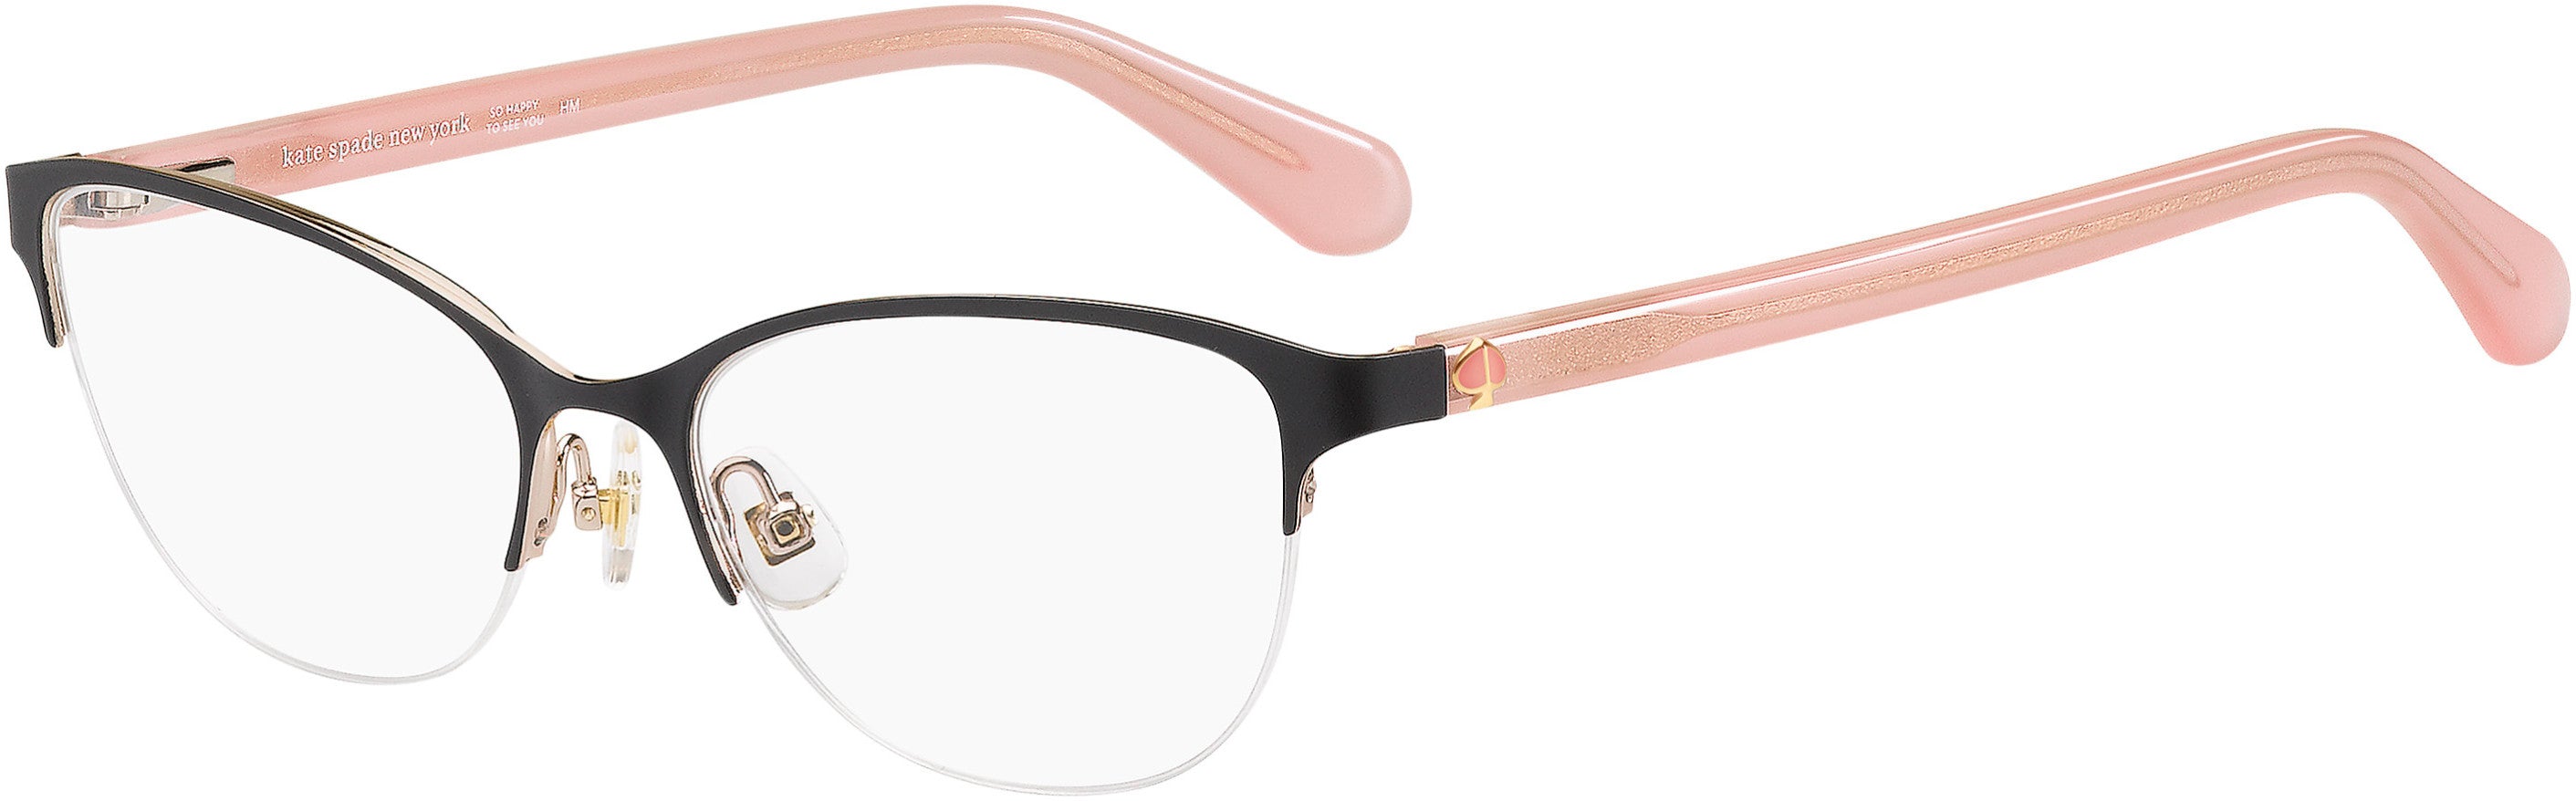 Kate Spade Adalina Cat Eye/butterfly Eyeglasses 0N6T-0N6T  Matte Black Black Pink (00 Demo Lens)